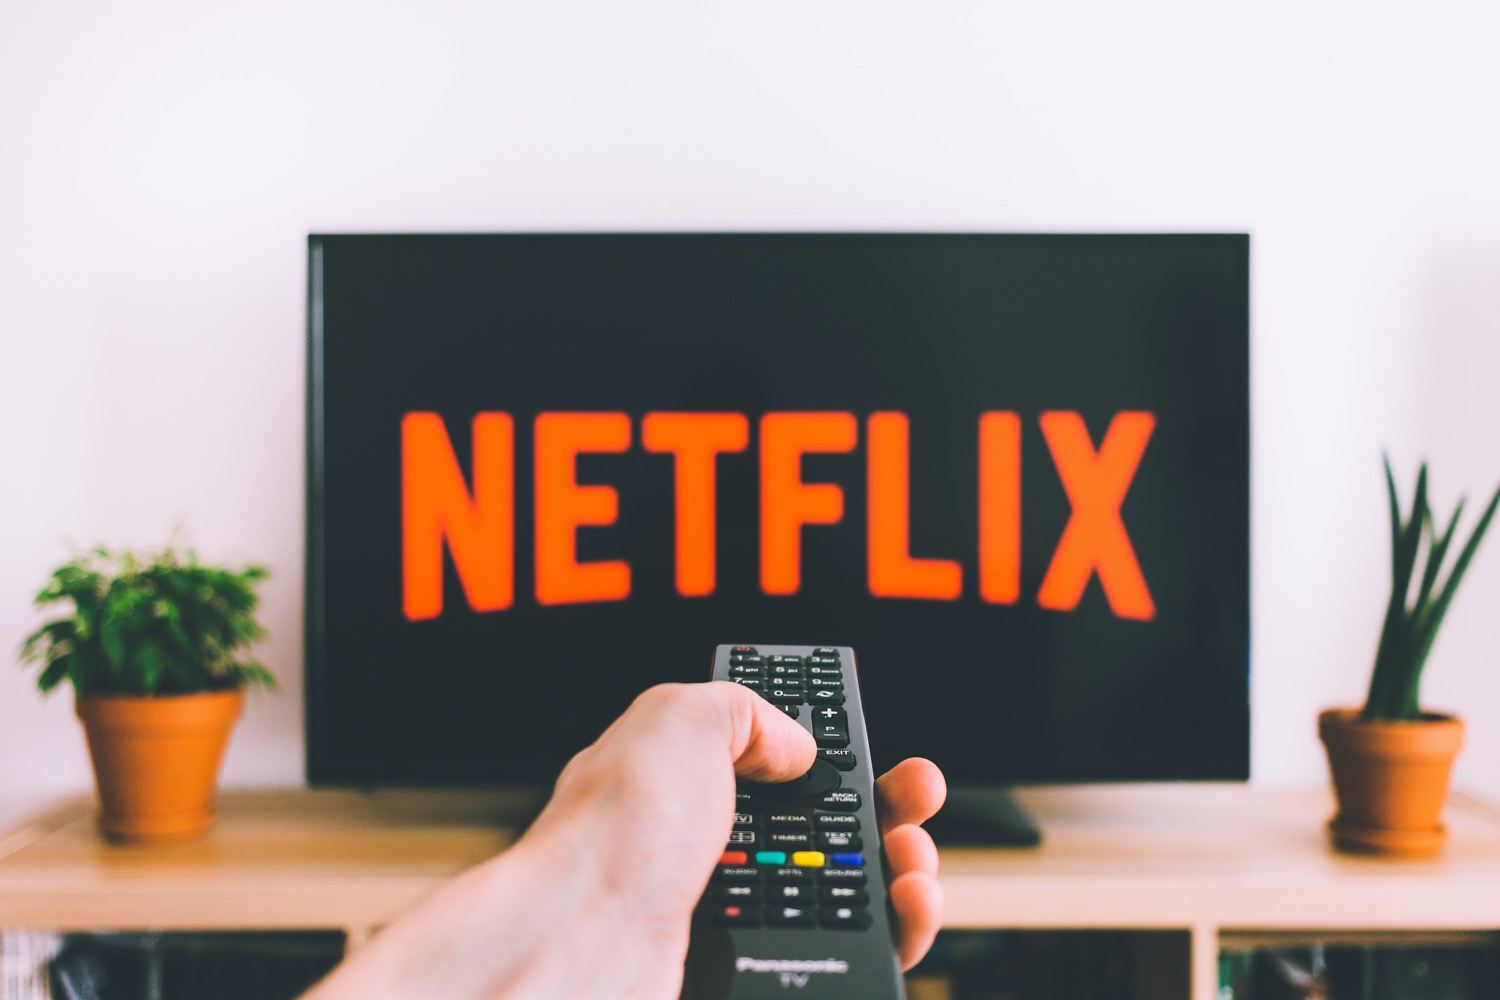 Il telecomando è puntato verso una TV con il logo Netflix